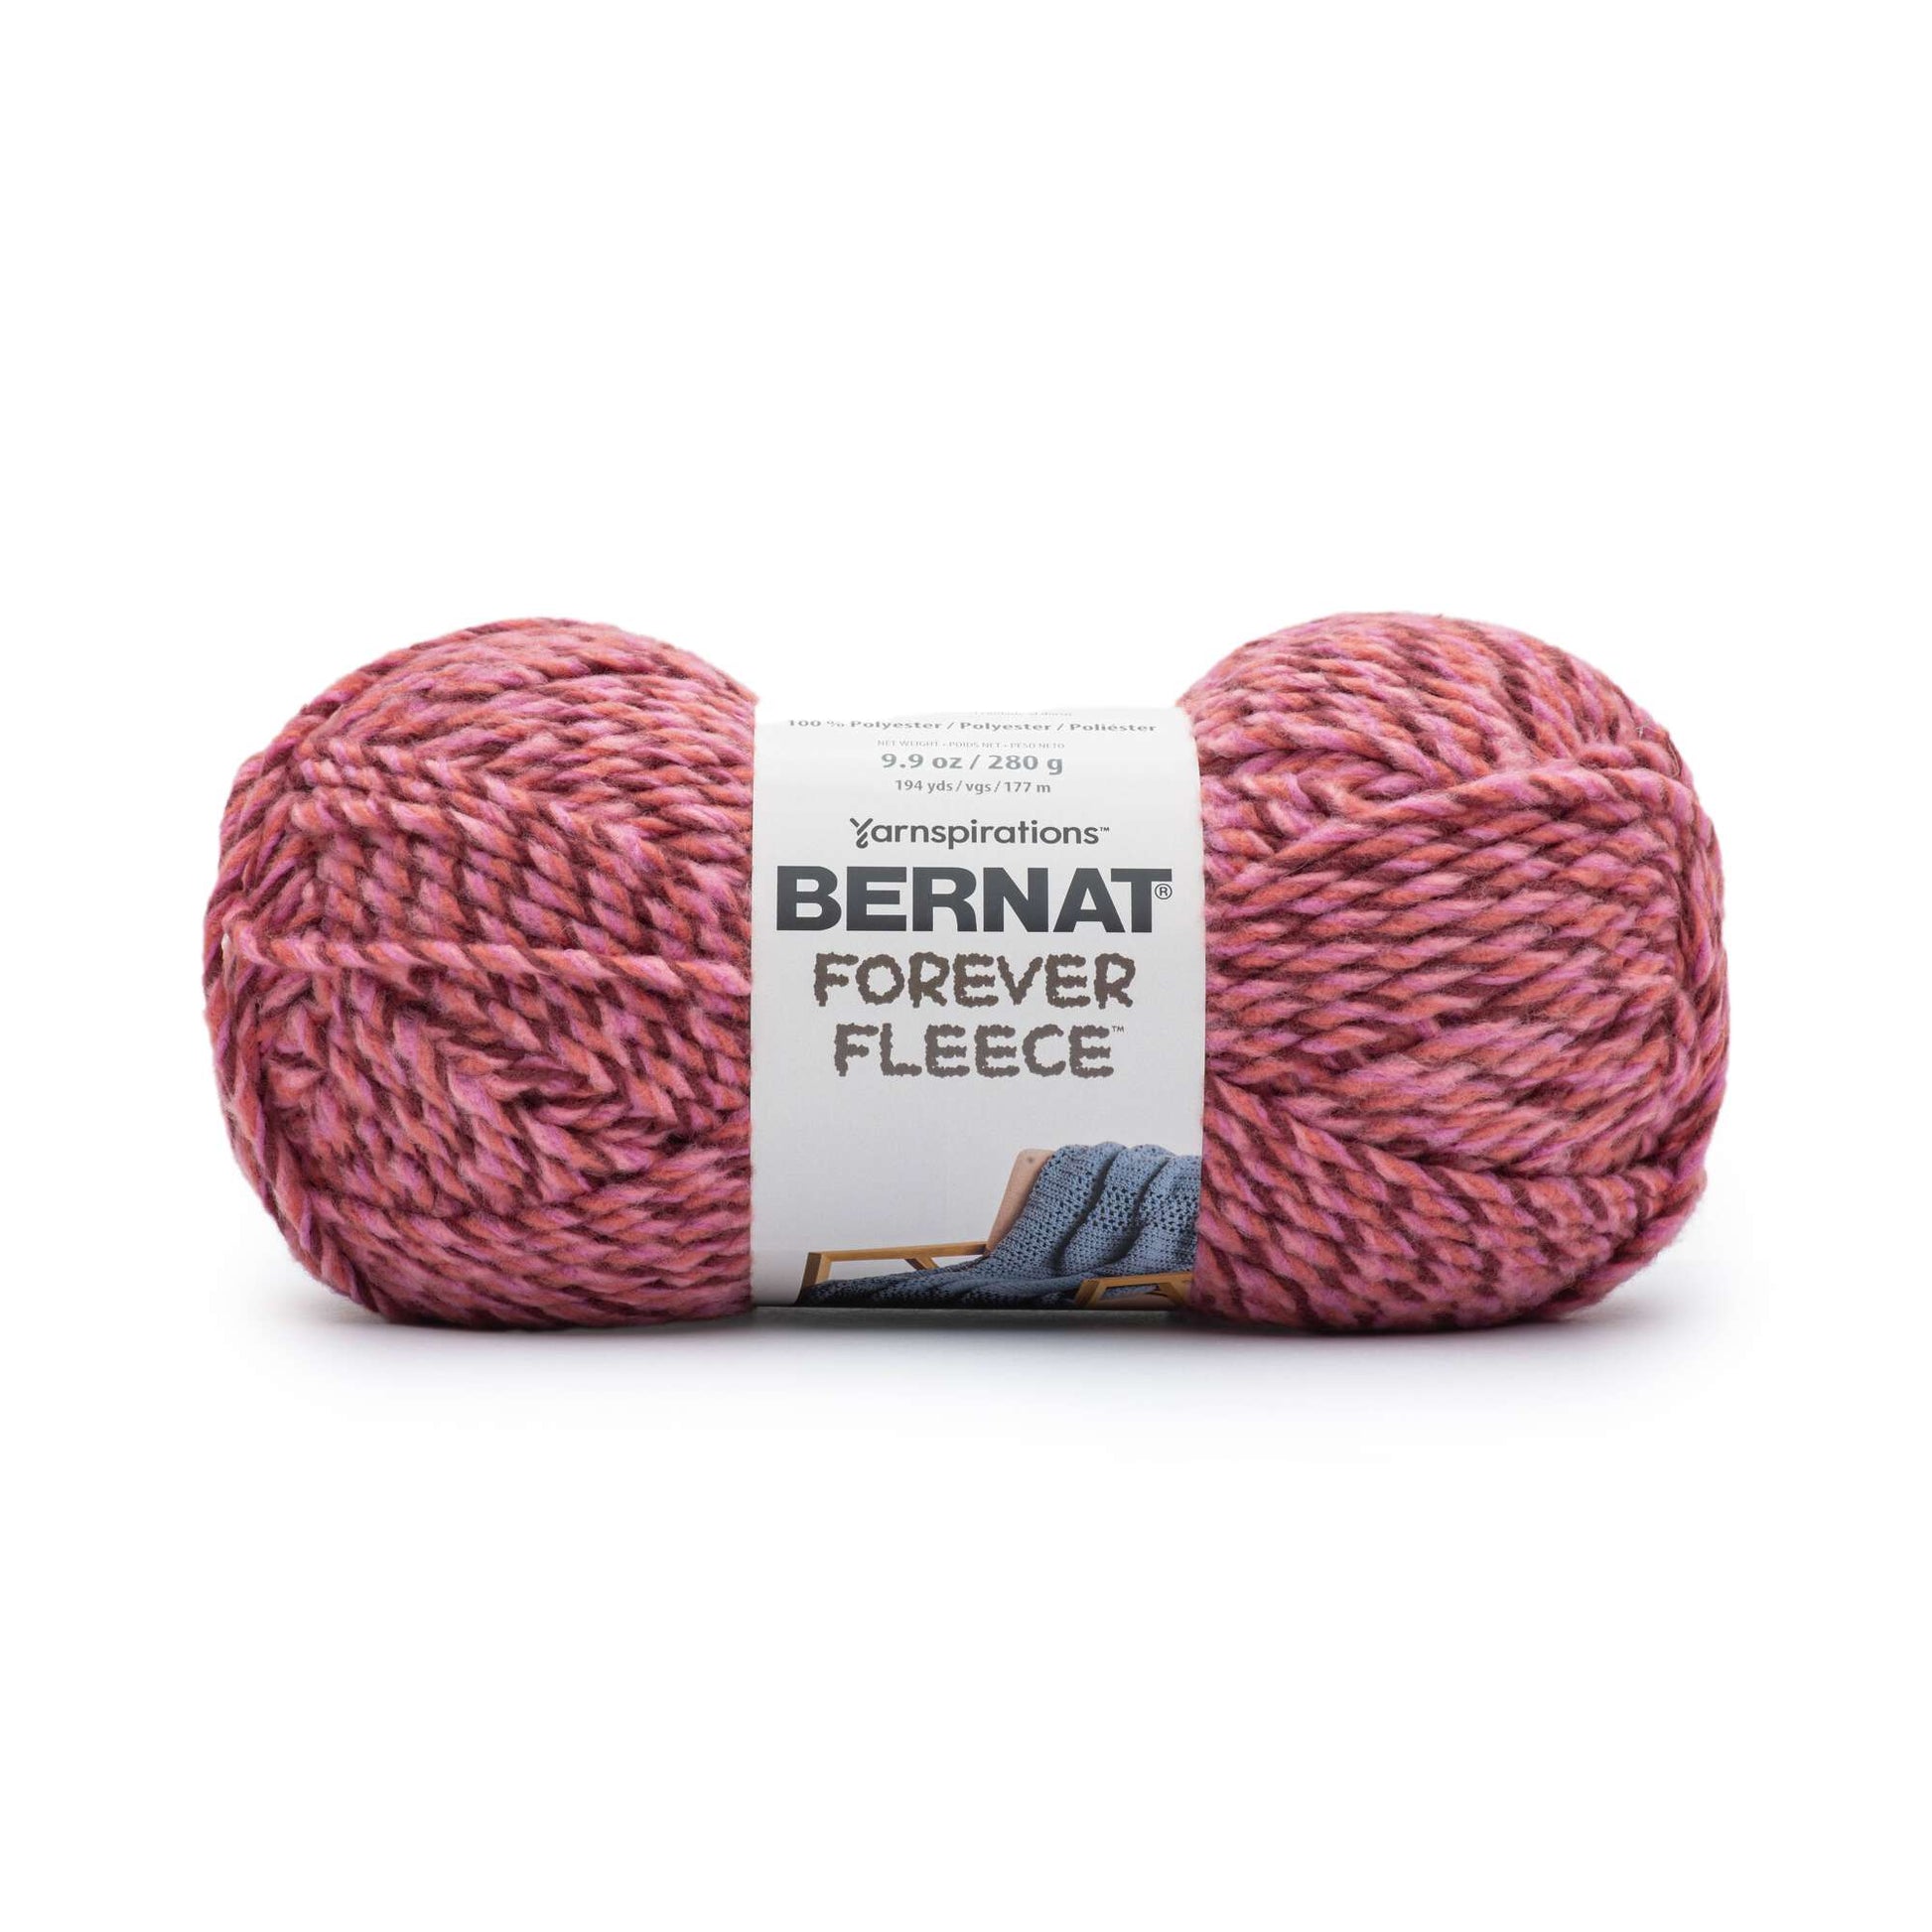 2 Pack Bernat Forever Fleece Yarn-Smoke 166061-61032